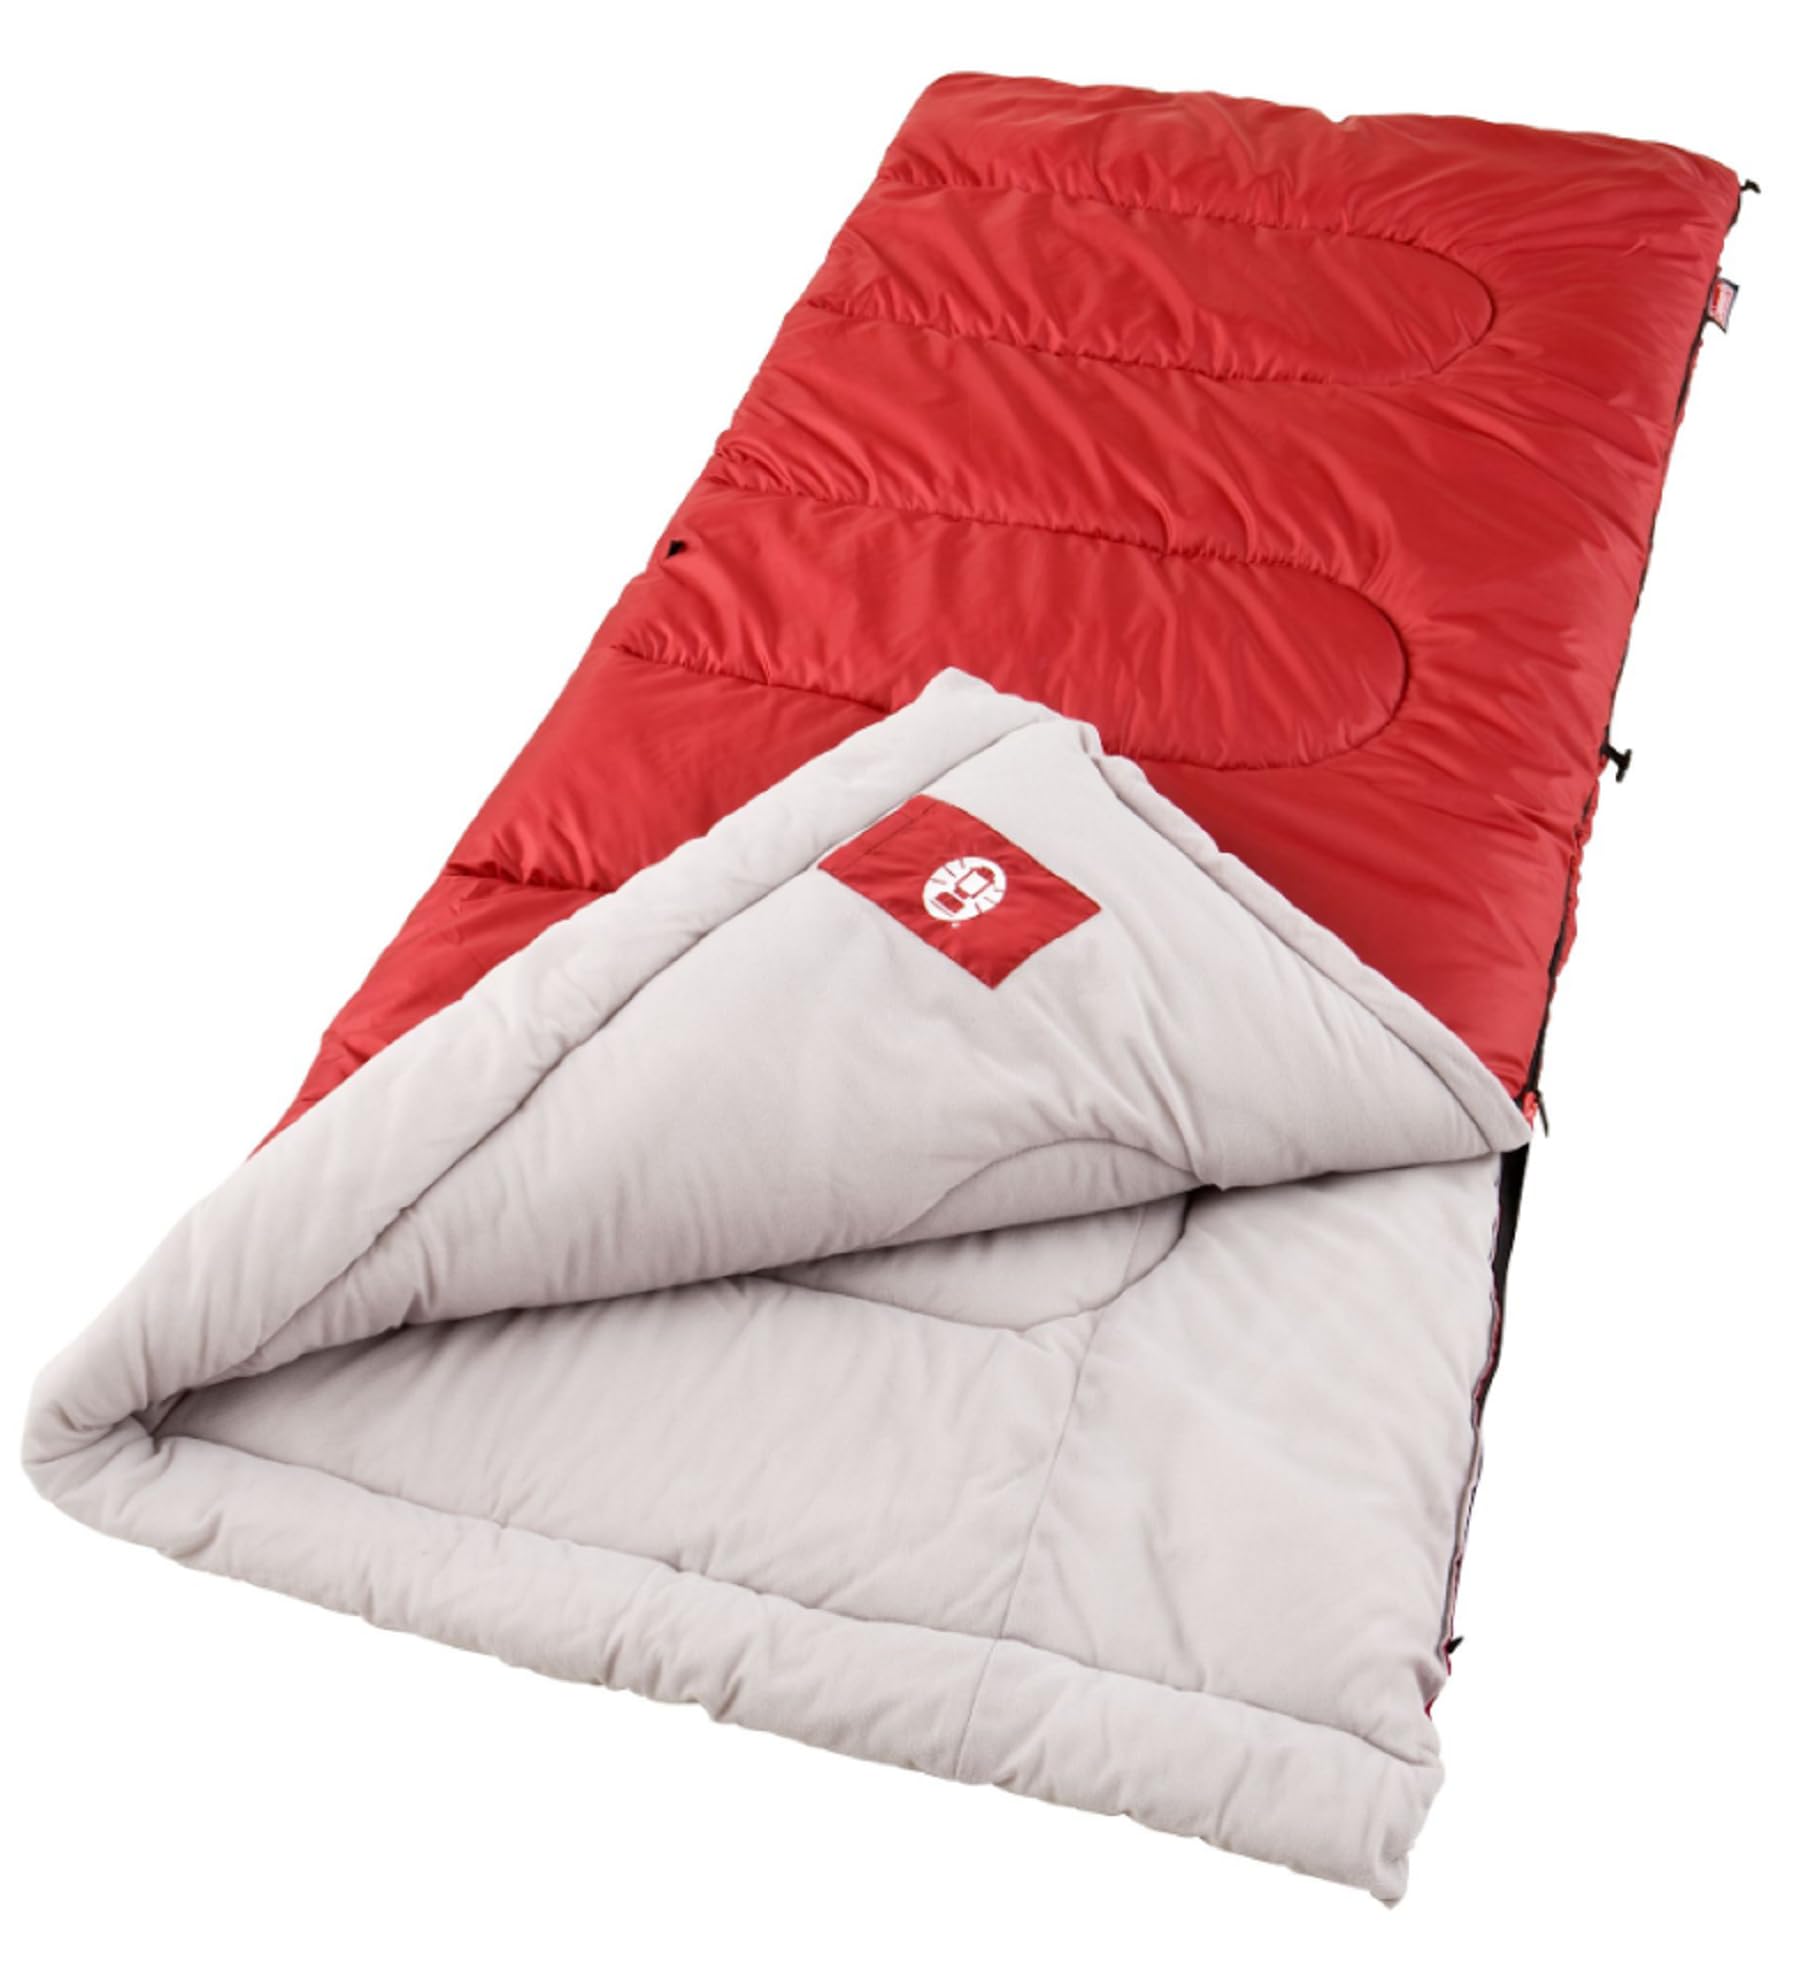 Coleman(コールマン) Palmetto (パルメット) 寝袋 最適温度 -1.1 〜 10 ℃ 180cmまで対応 日本未発売